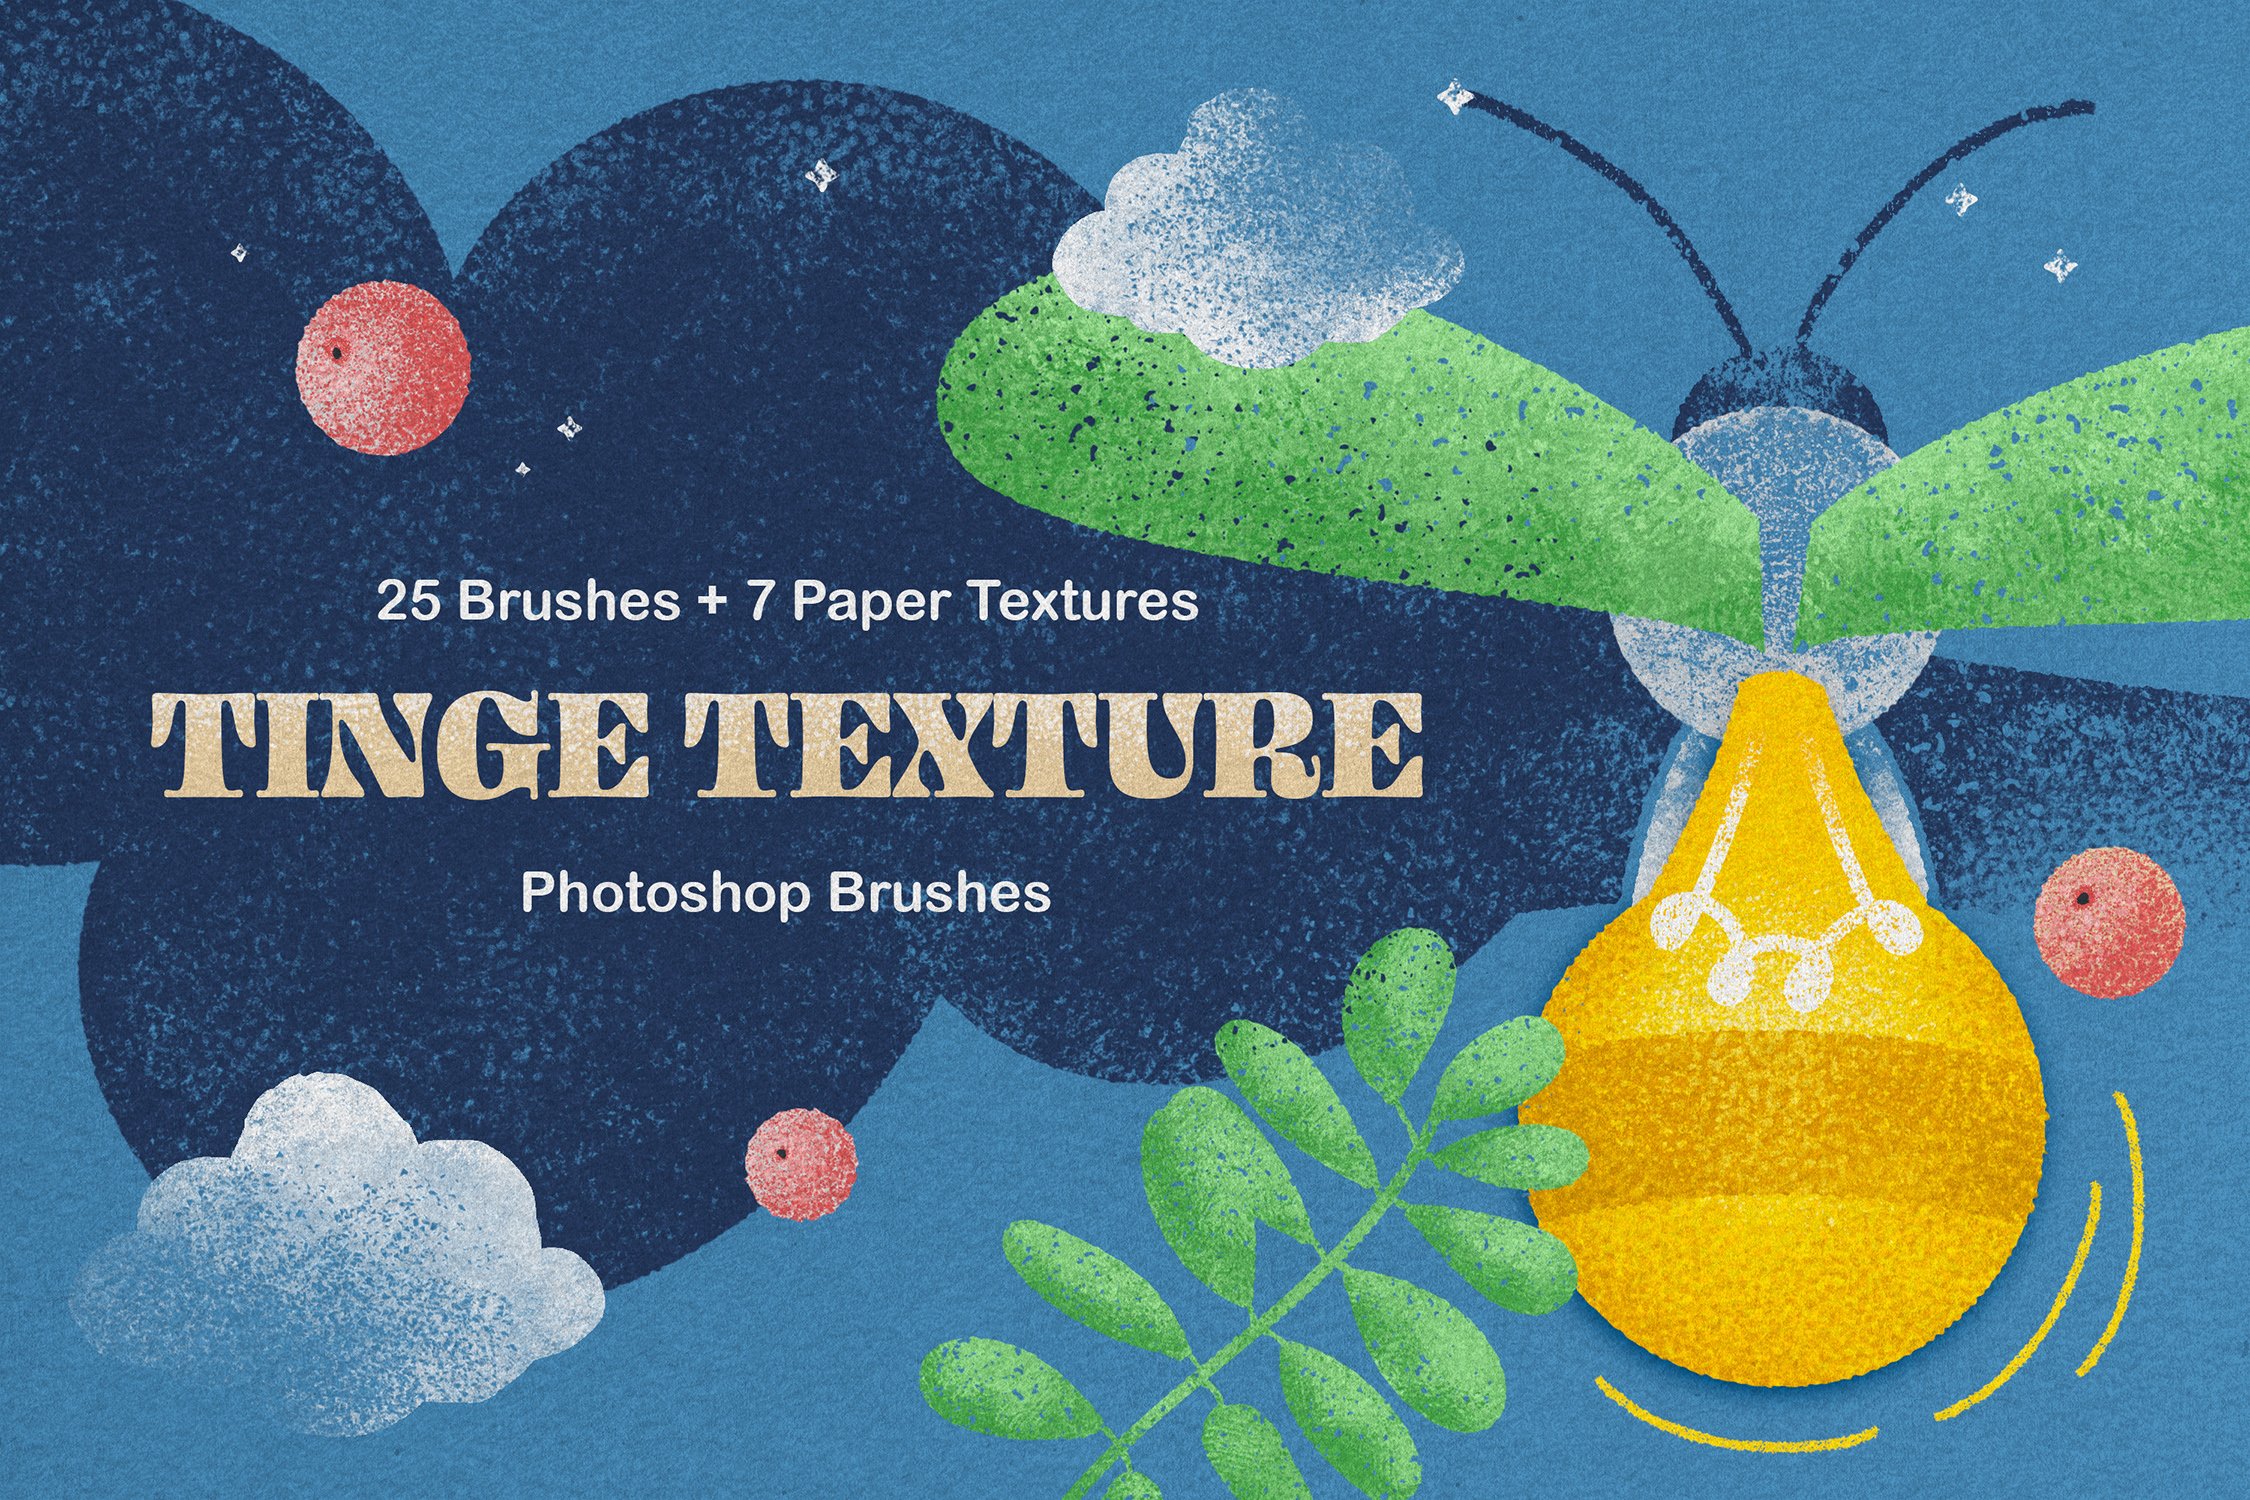 Tinge Texture Photoshop Brushescover image.